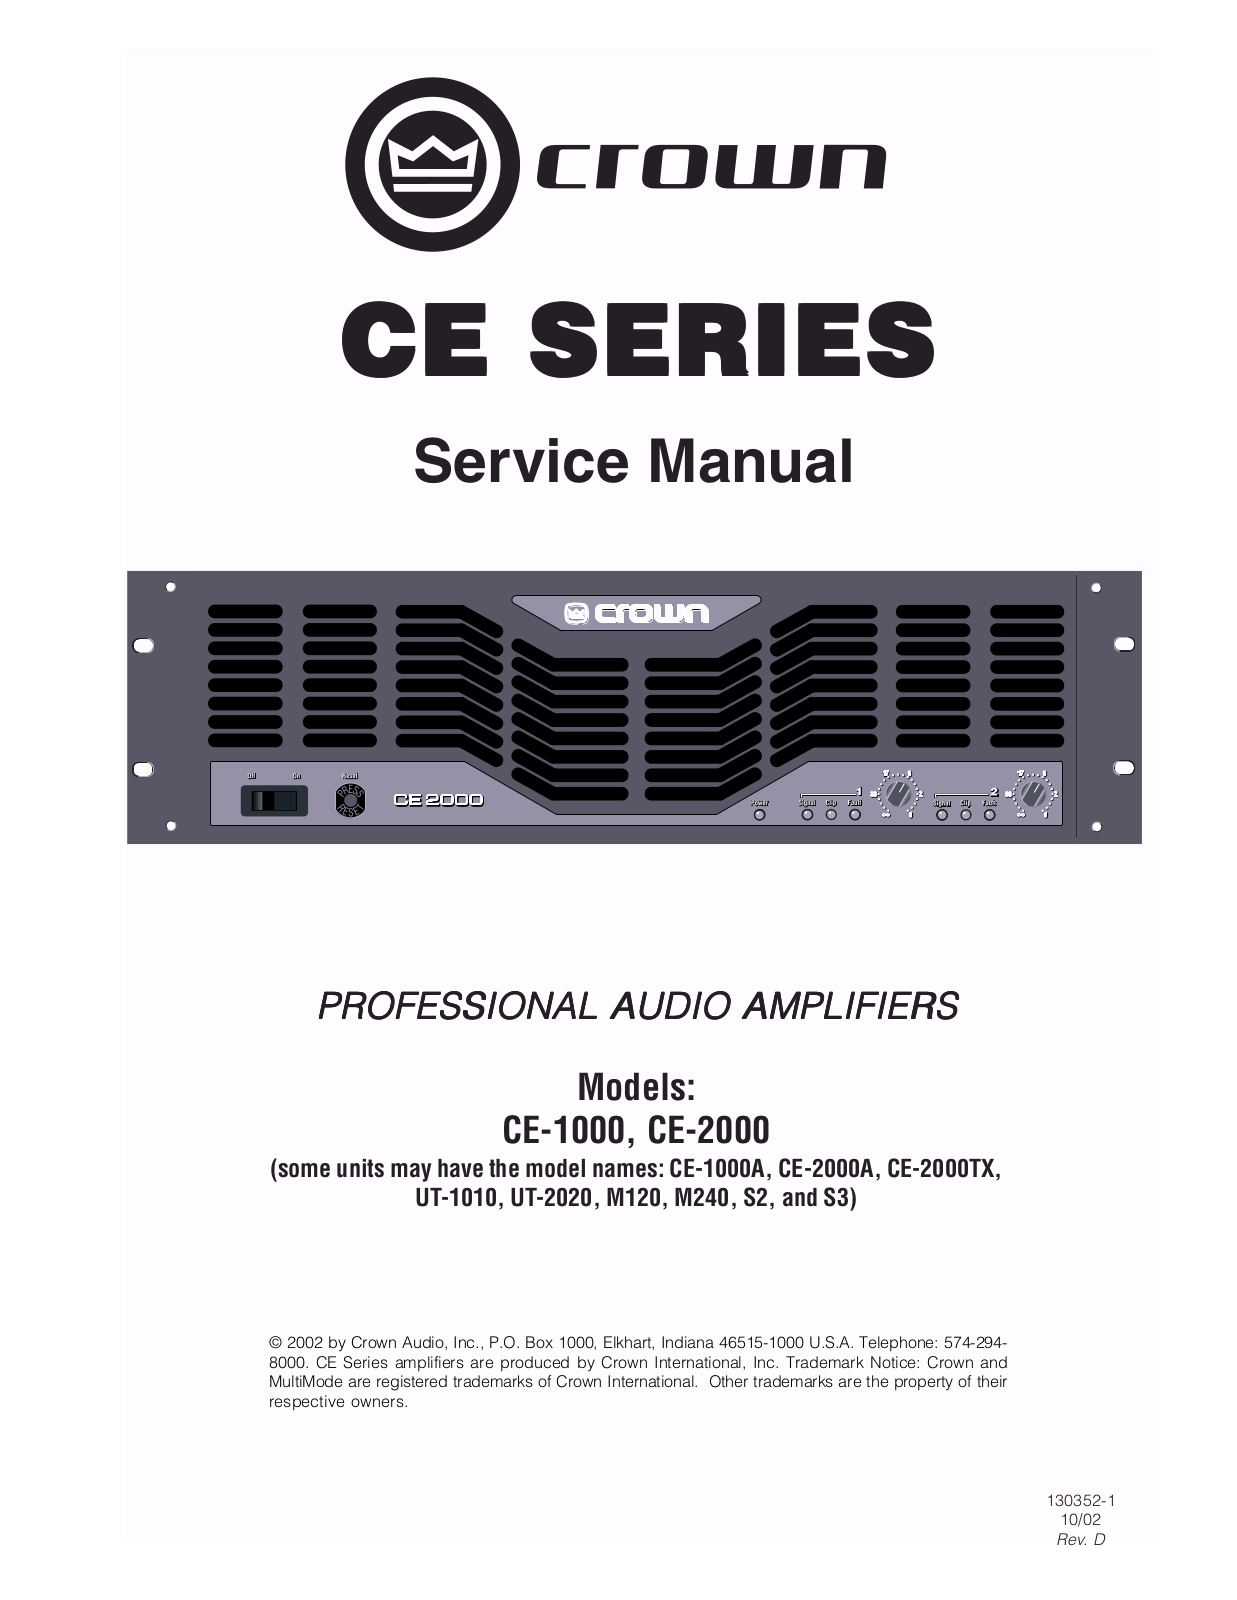 Crown CE-1000, CE-1000-A, CE-2000, CE-2000-A, CE-2000-TX Service manual